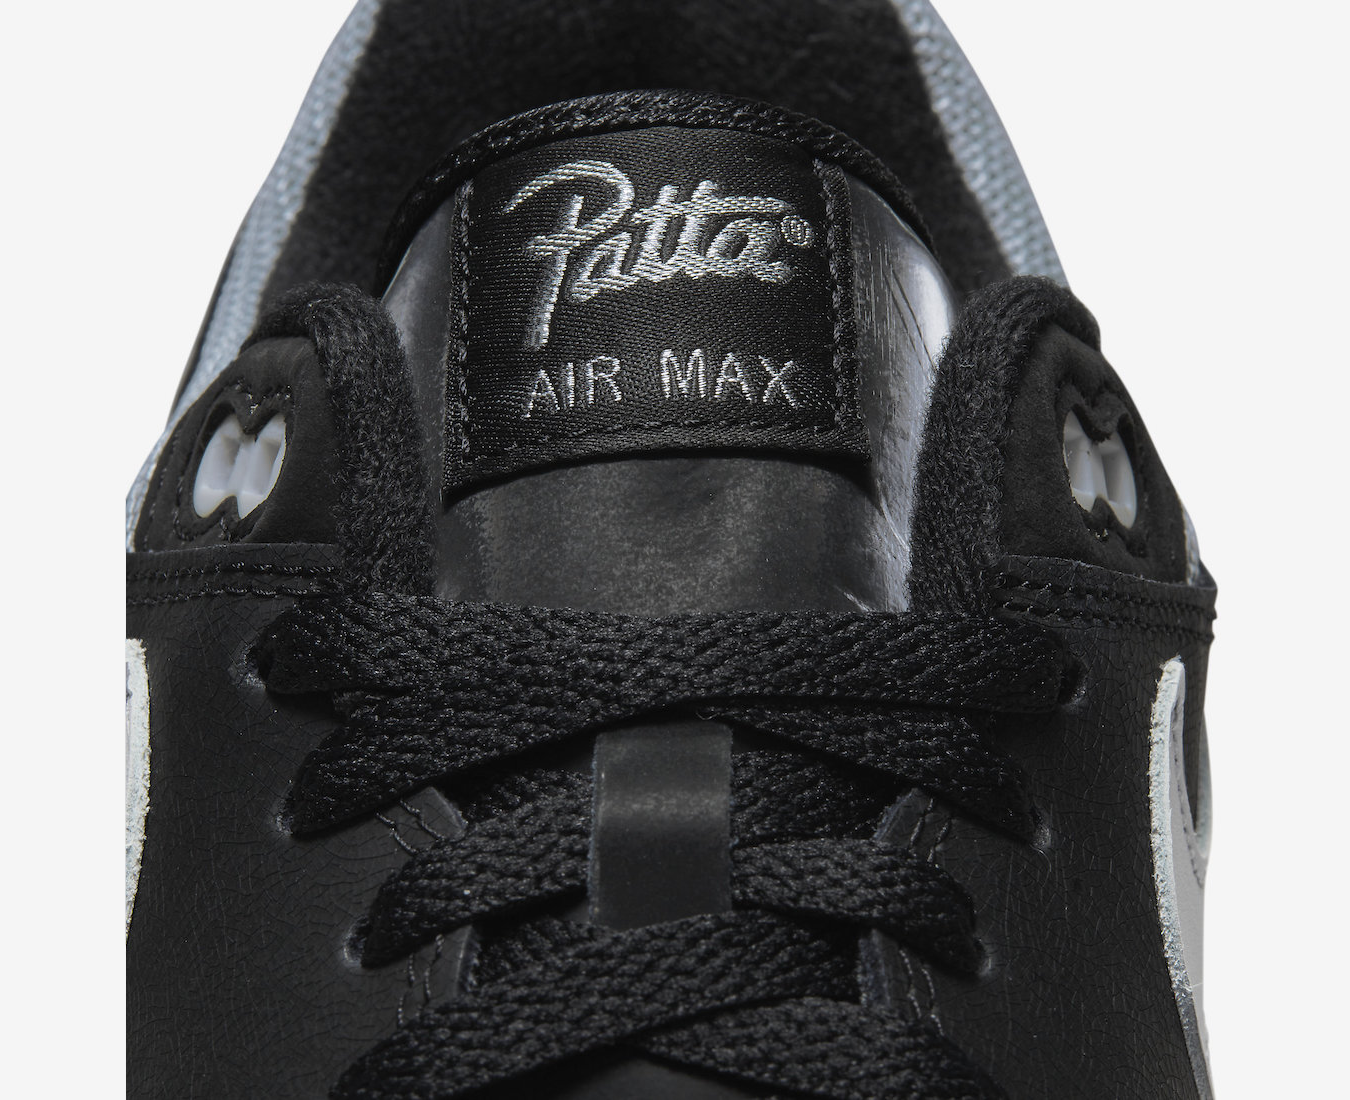 Nike Air Max 1 Patta Waves 'Black'